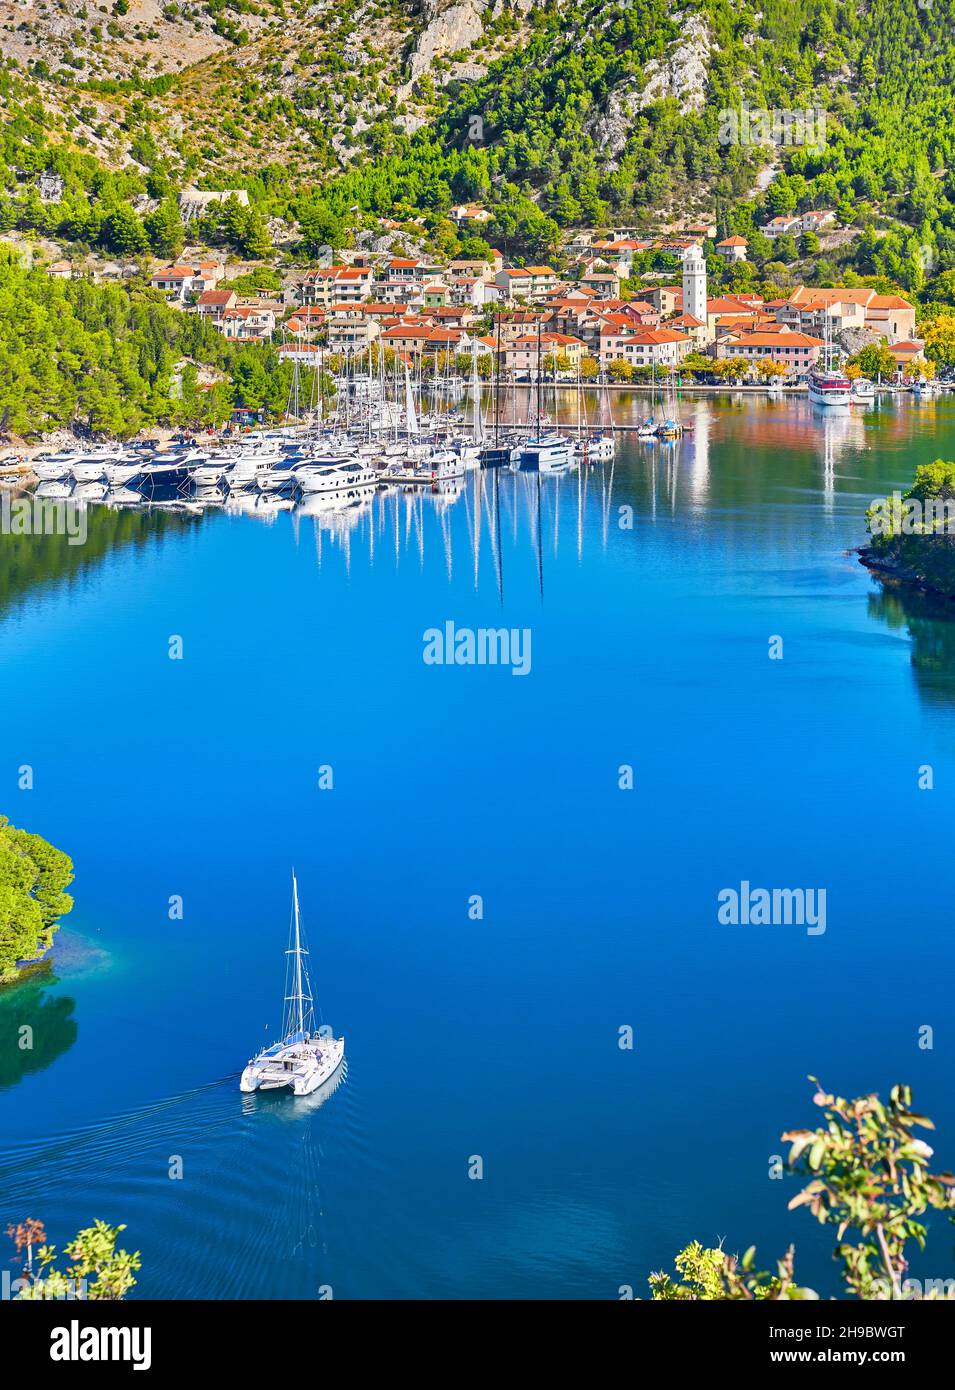 Vista aerea di Skradin, fiume Krka, Dalmazia, Croazia Foto Stock